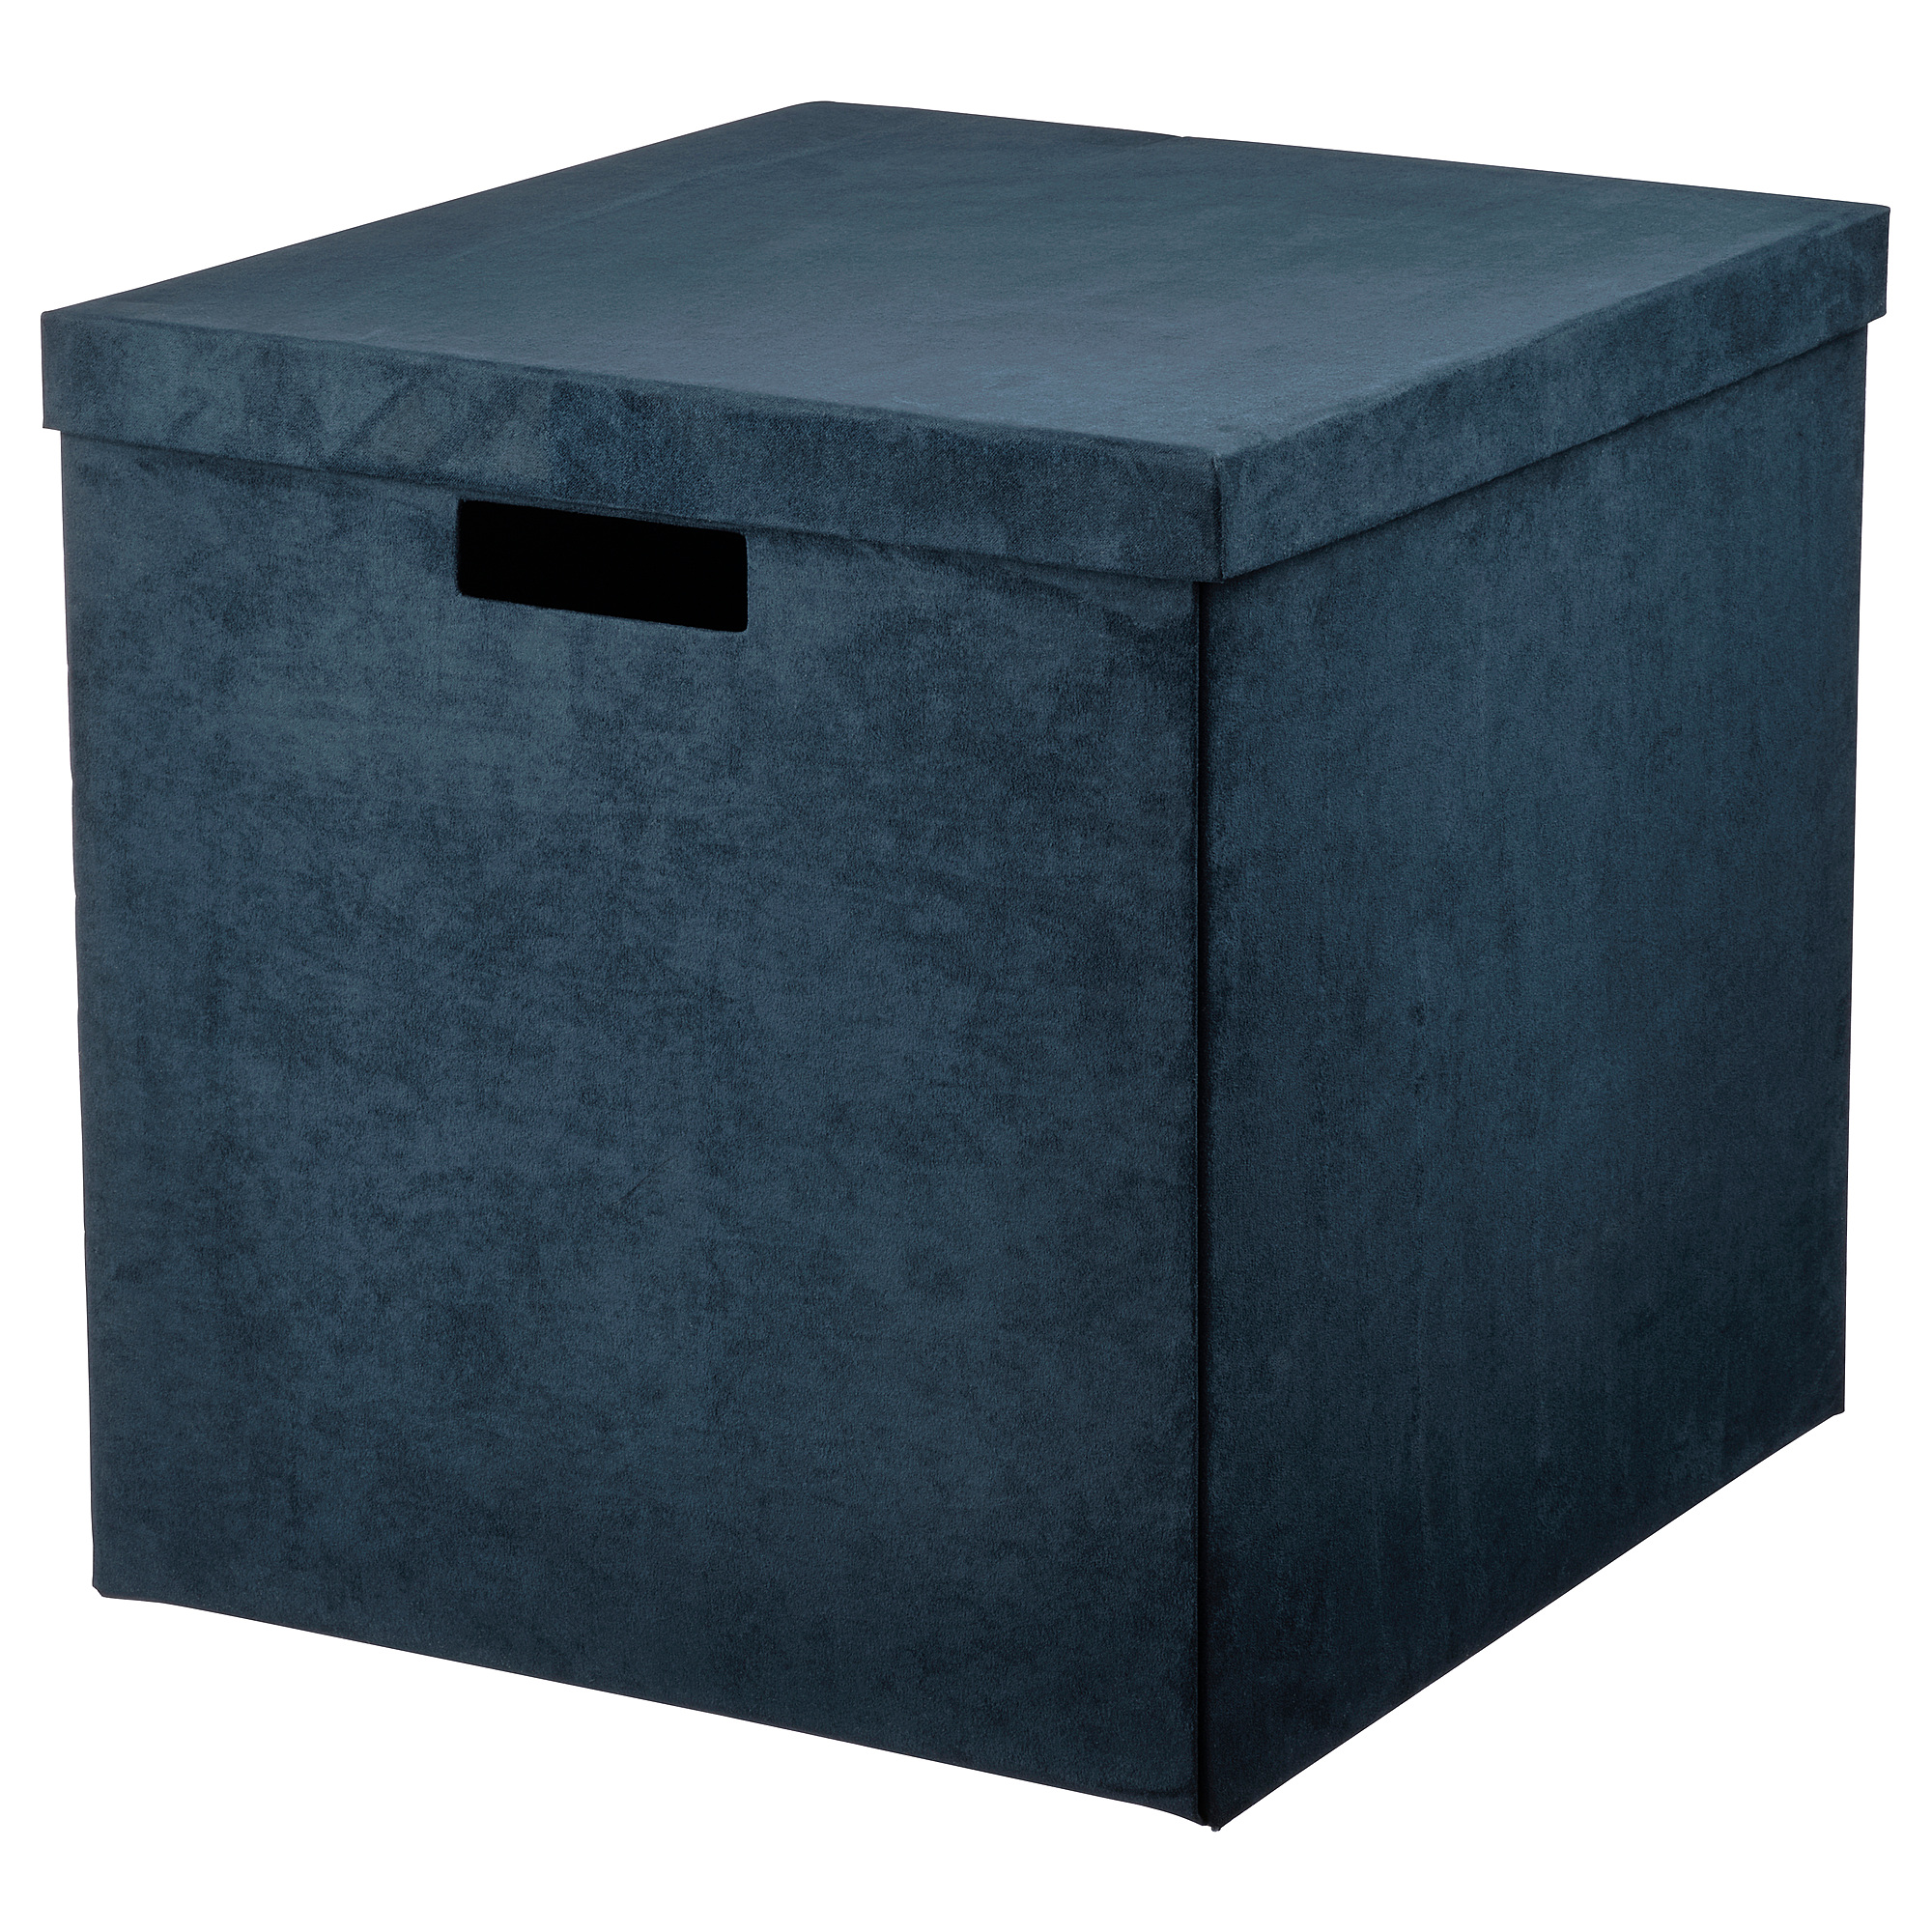 GJÄTTA storage box with lid